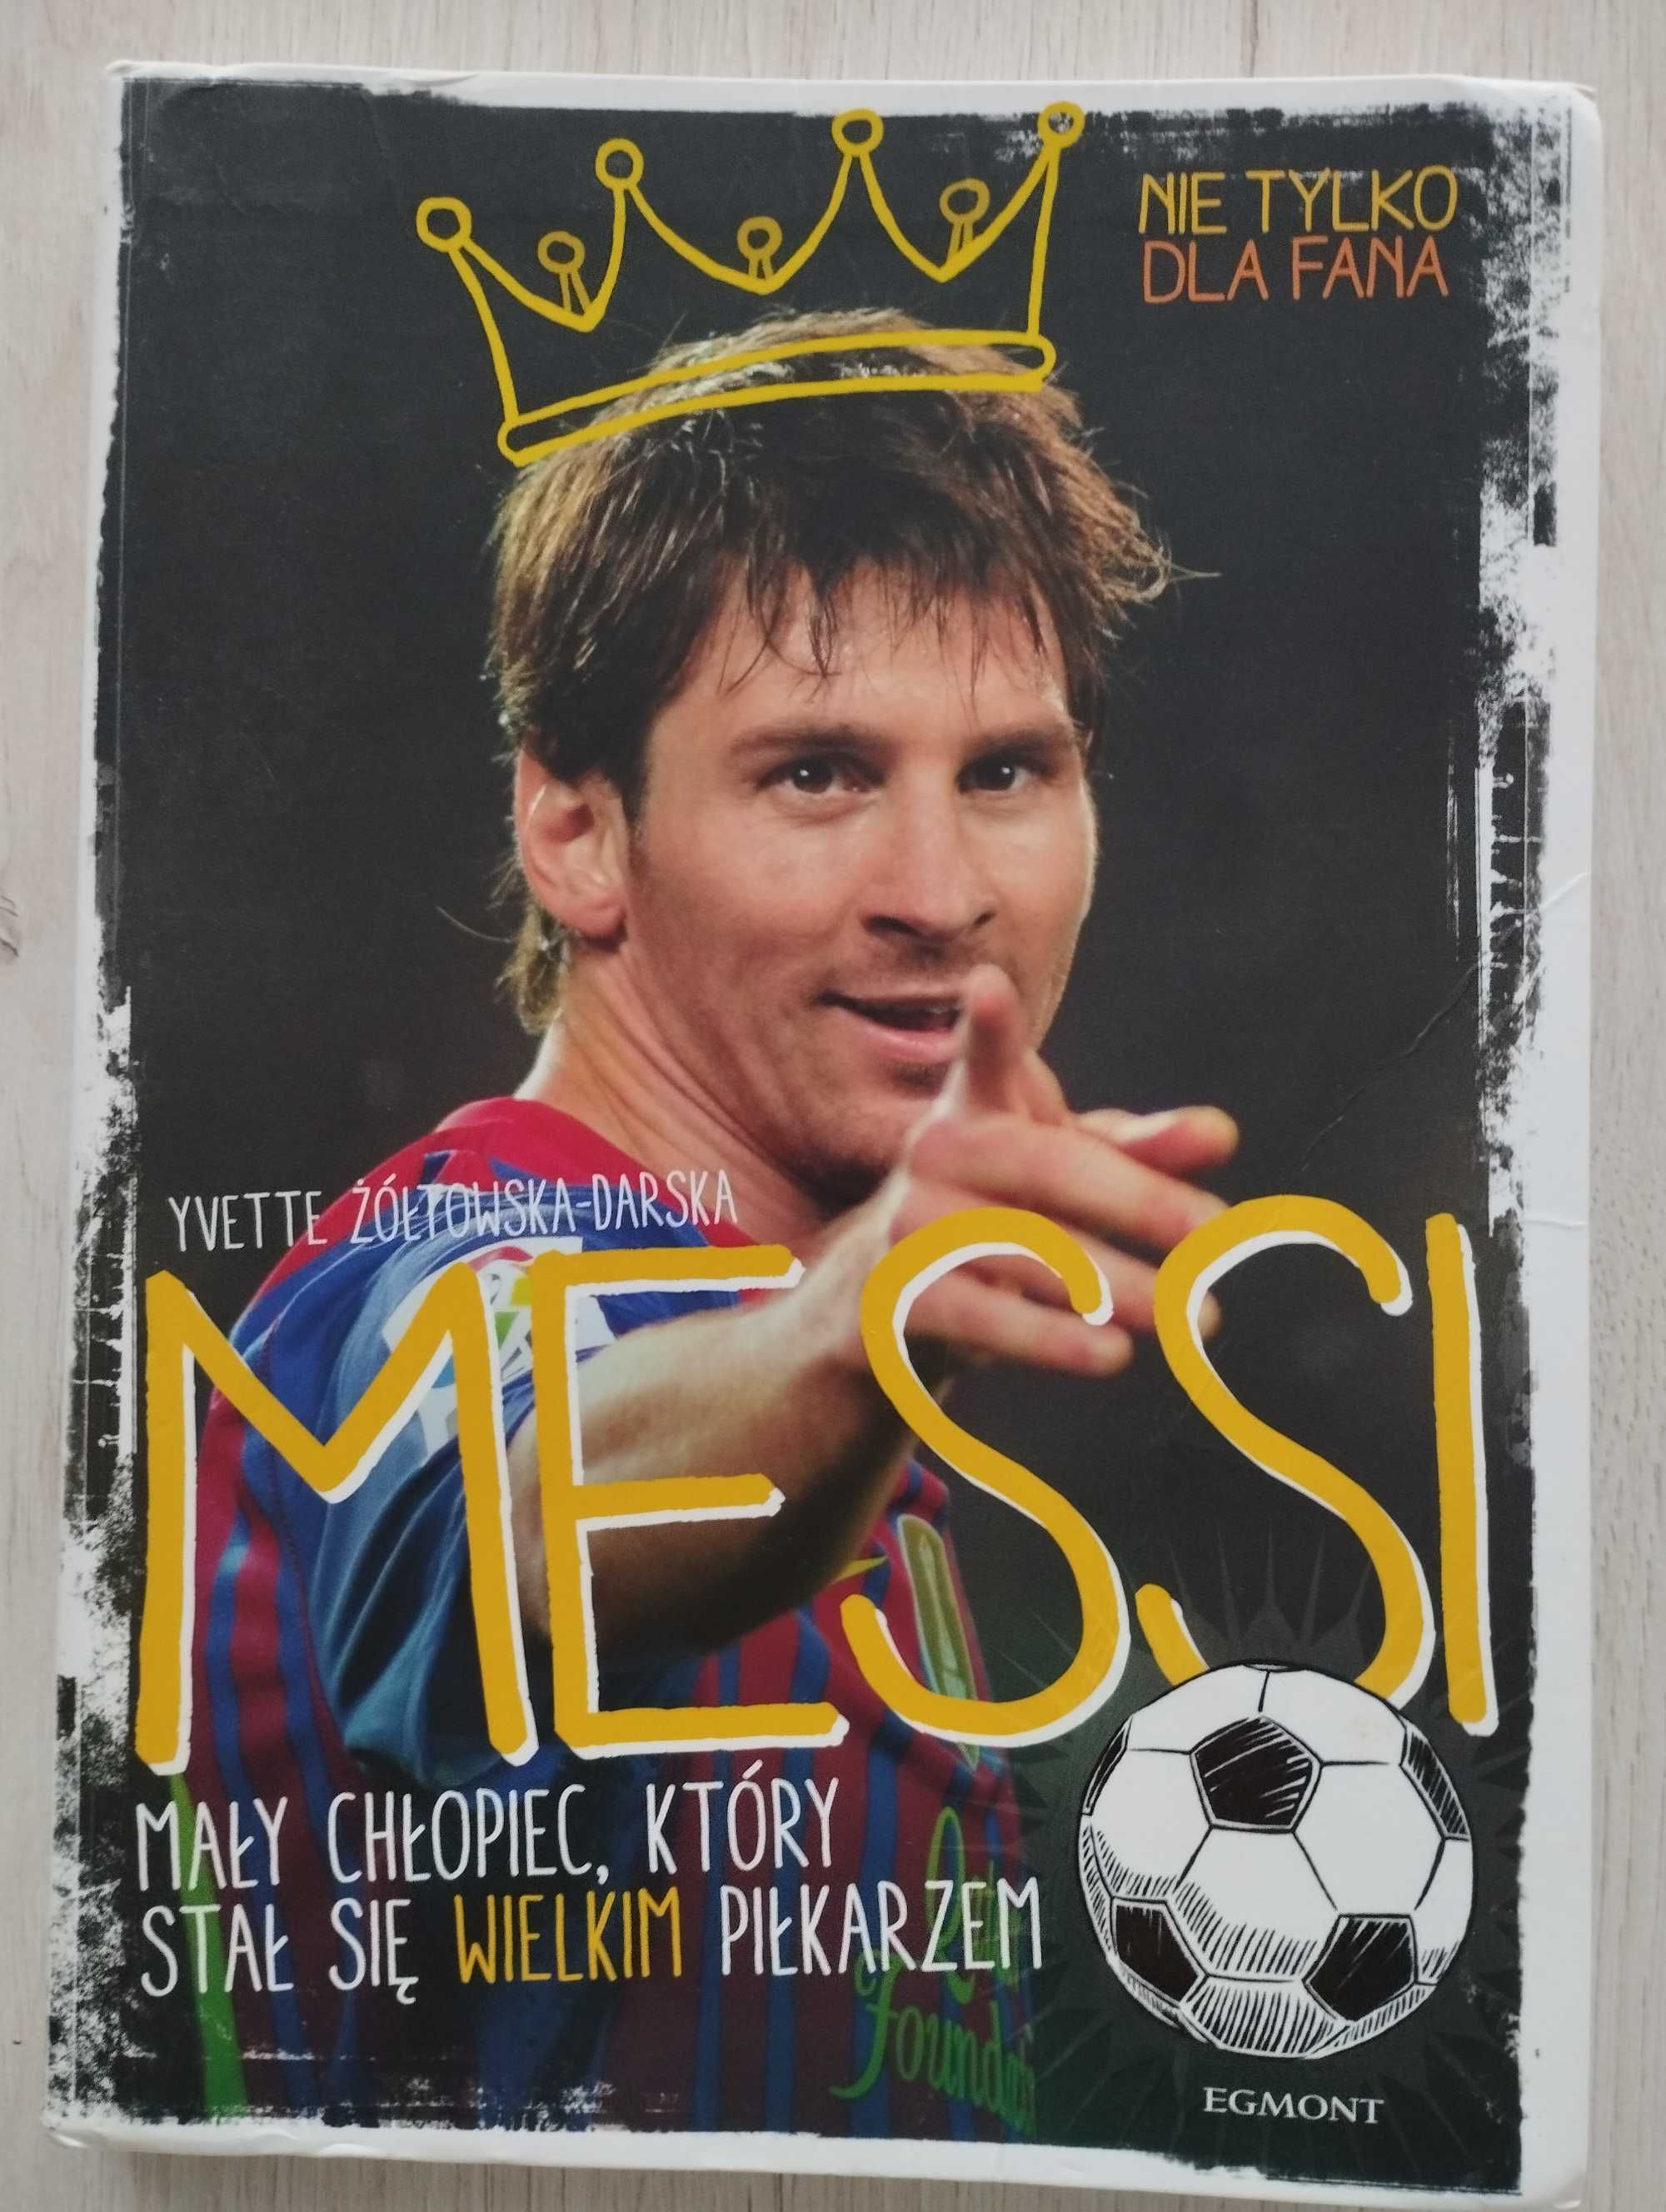 Messi, mały chłopiec,który stał się wielkim piłkarzem